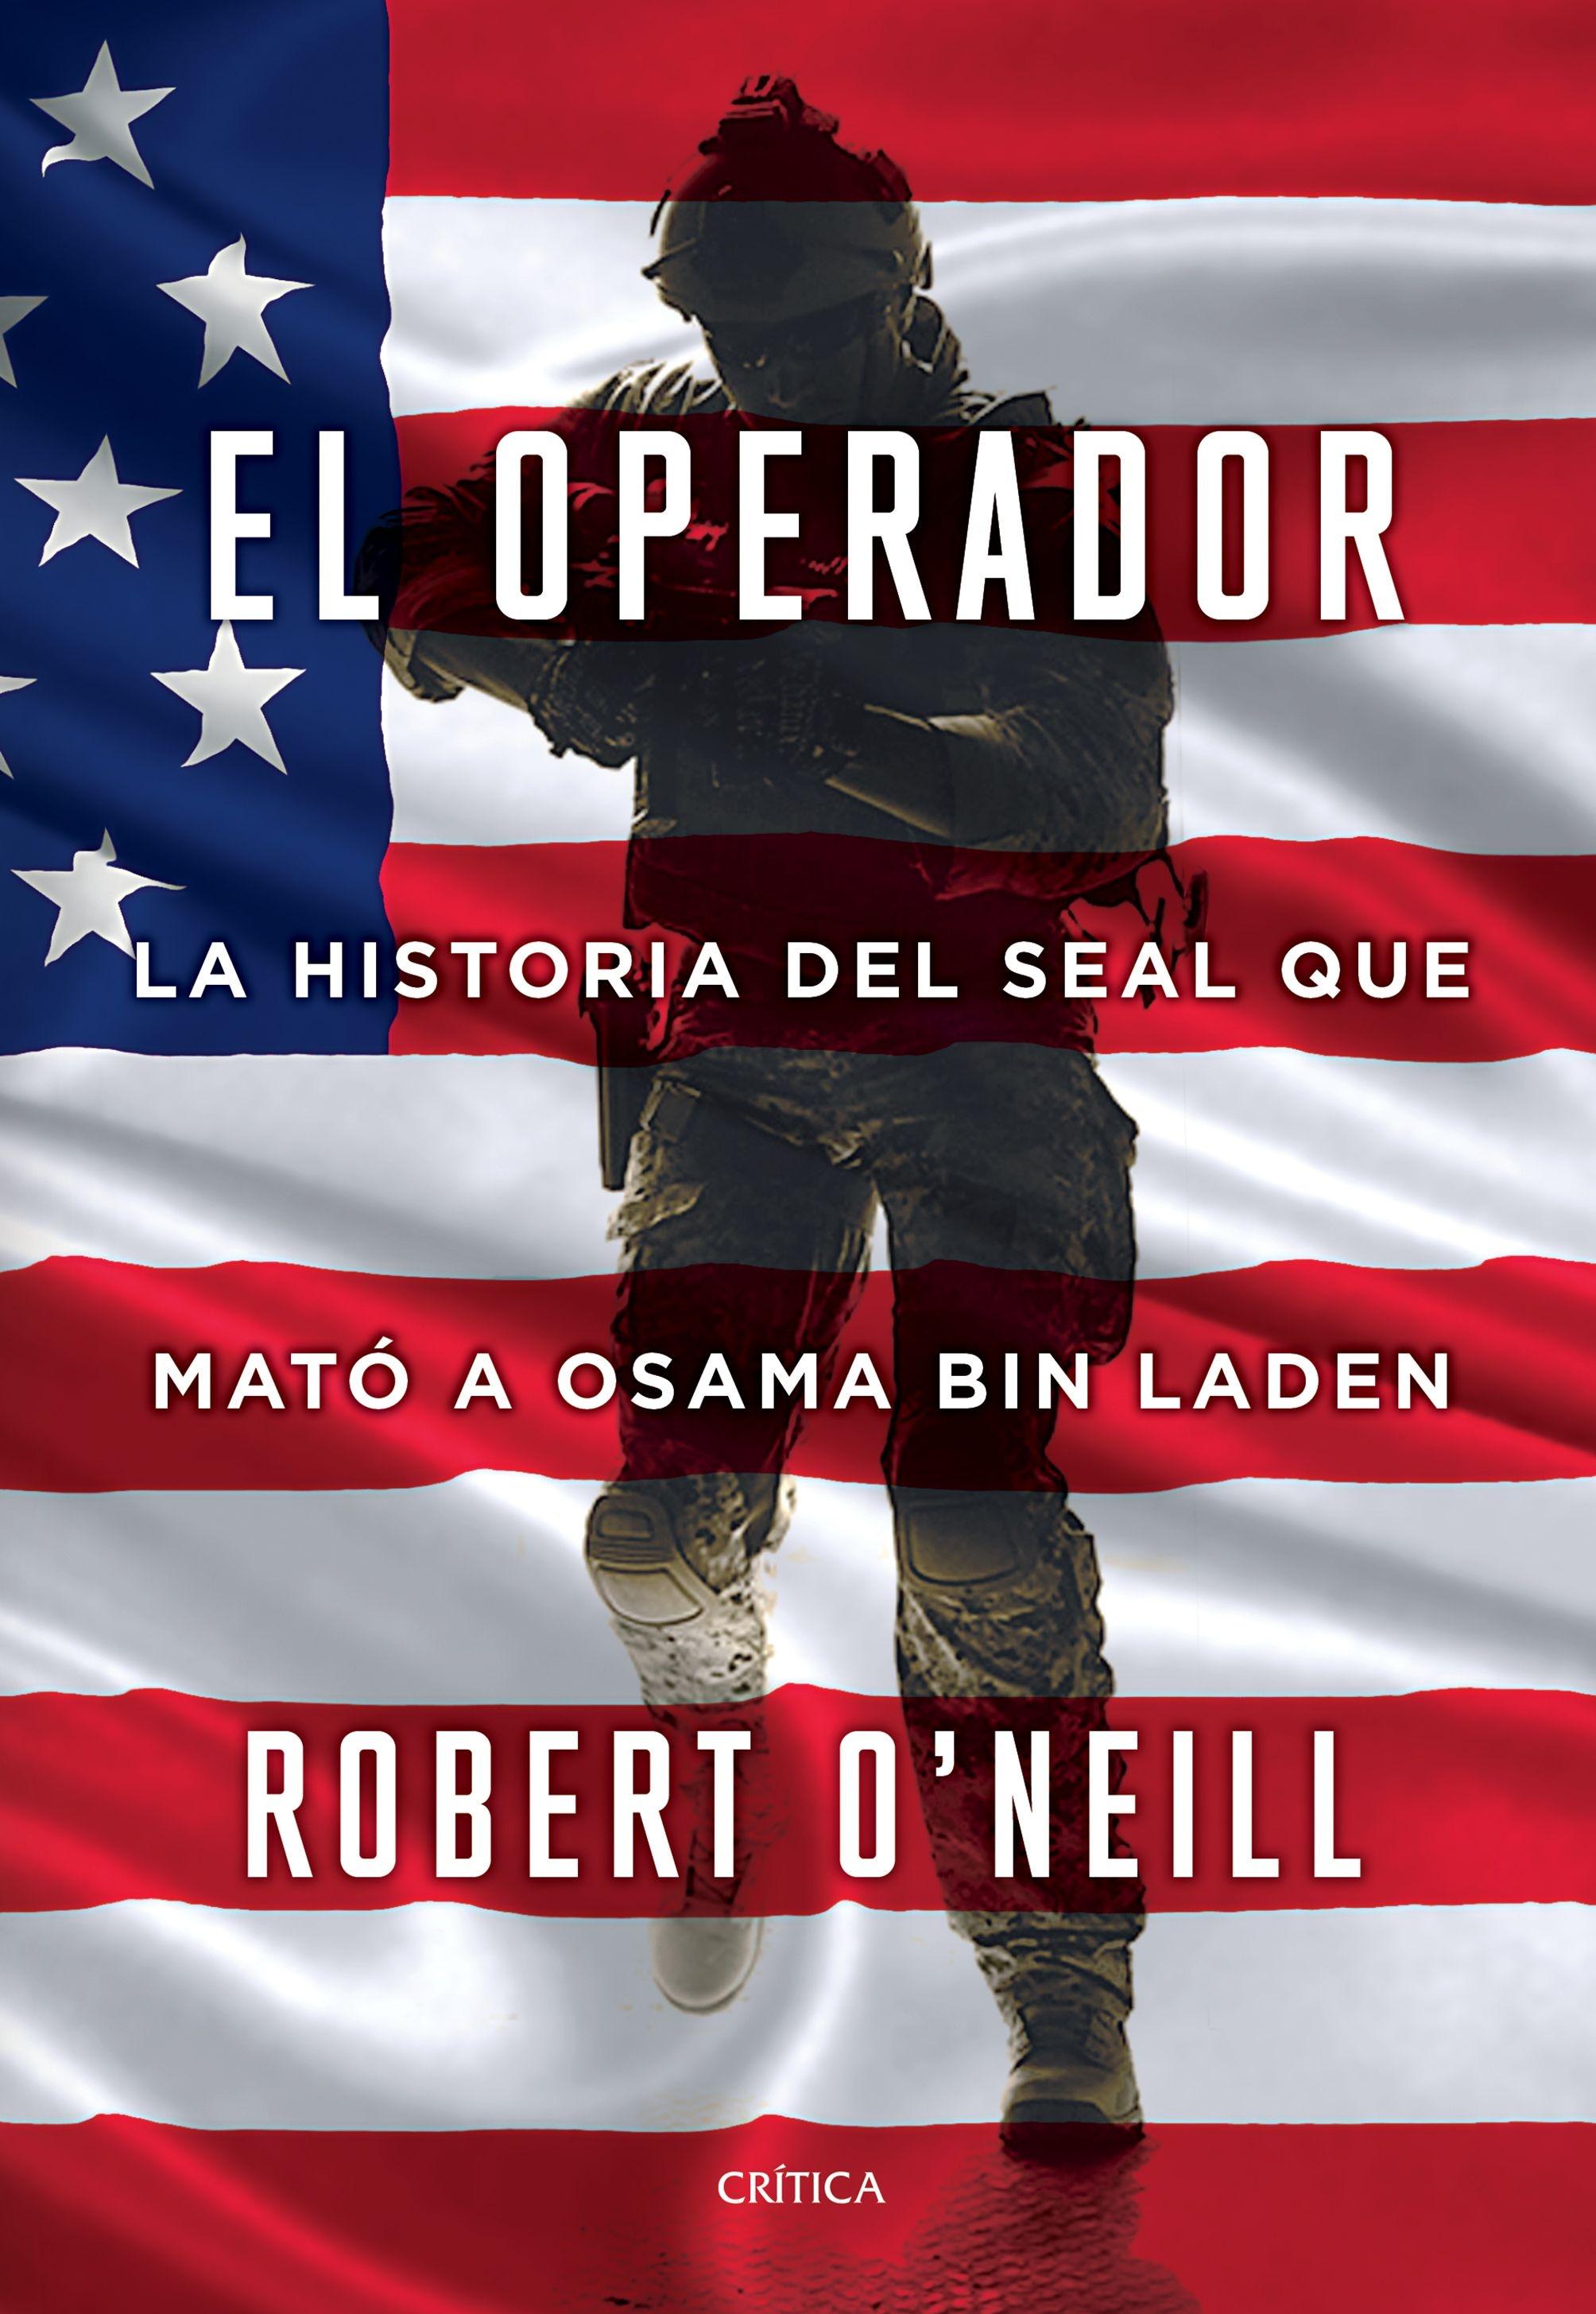 El Operador "La Historia del Seal que Mató a Osama Bin Laden"